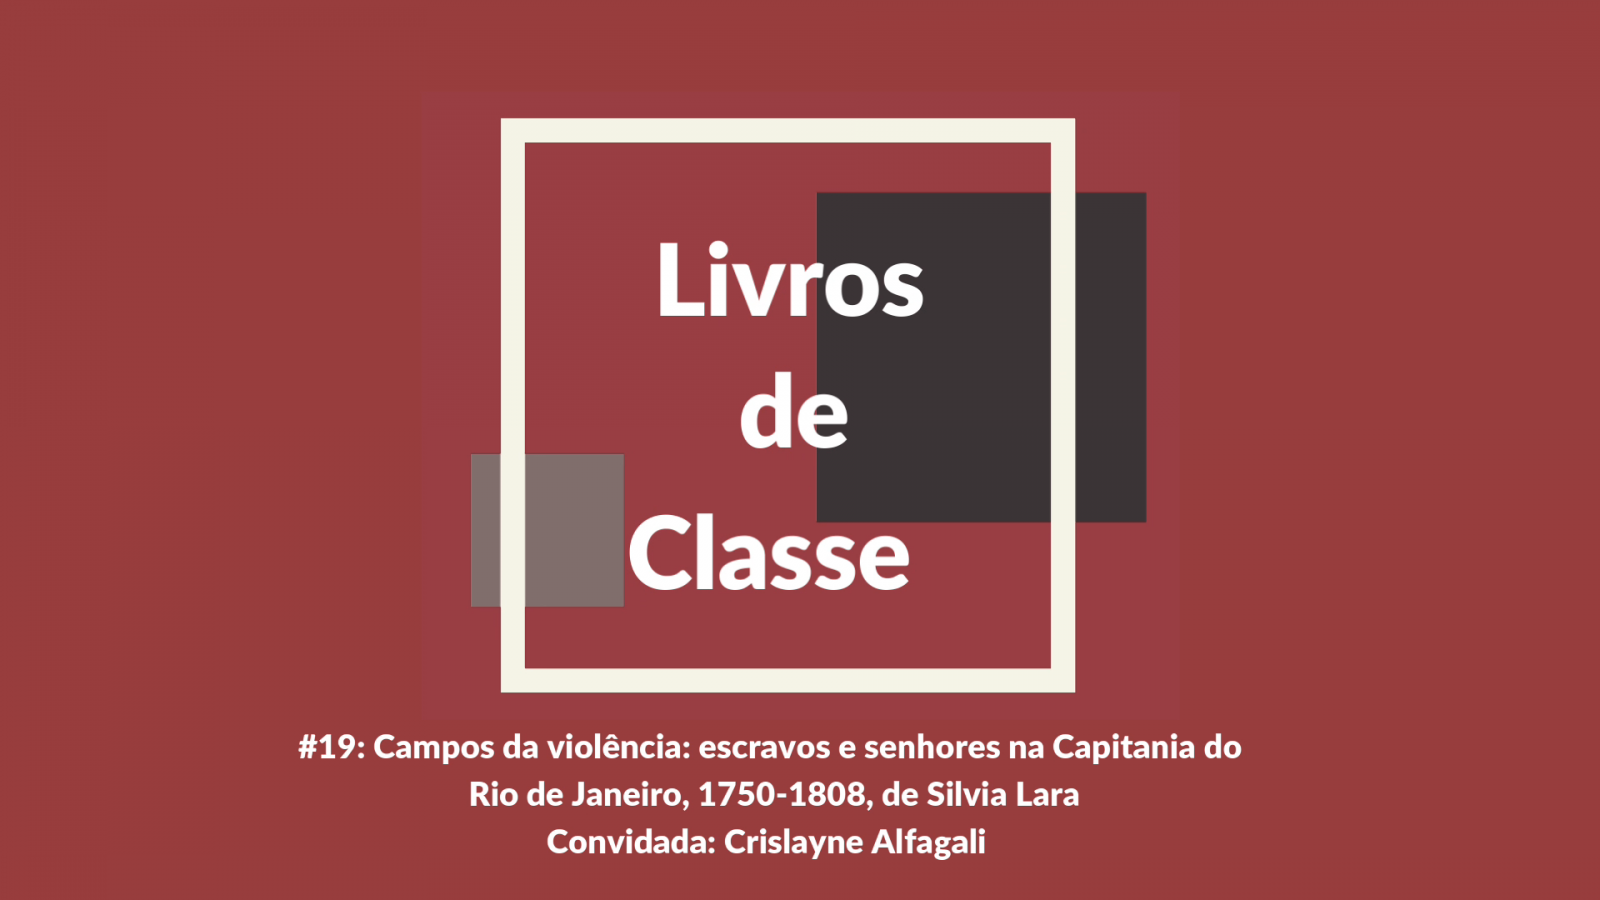 Livros de Classe #19: Campos da violência, de Silvia Lara, por Crislayne Alfagali